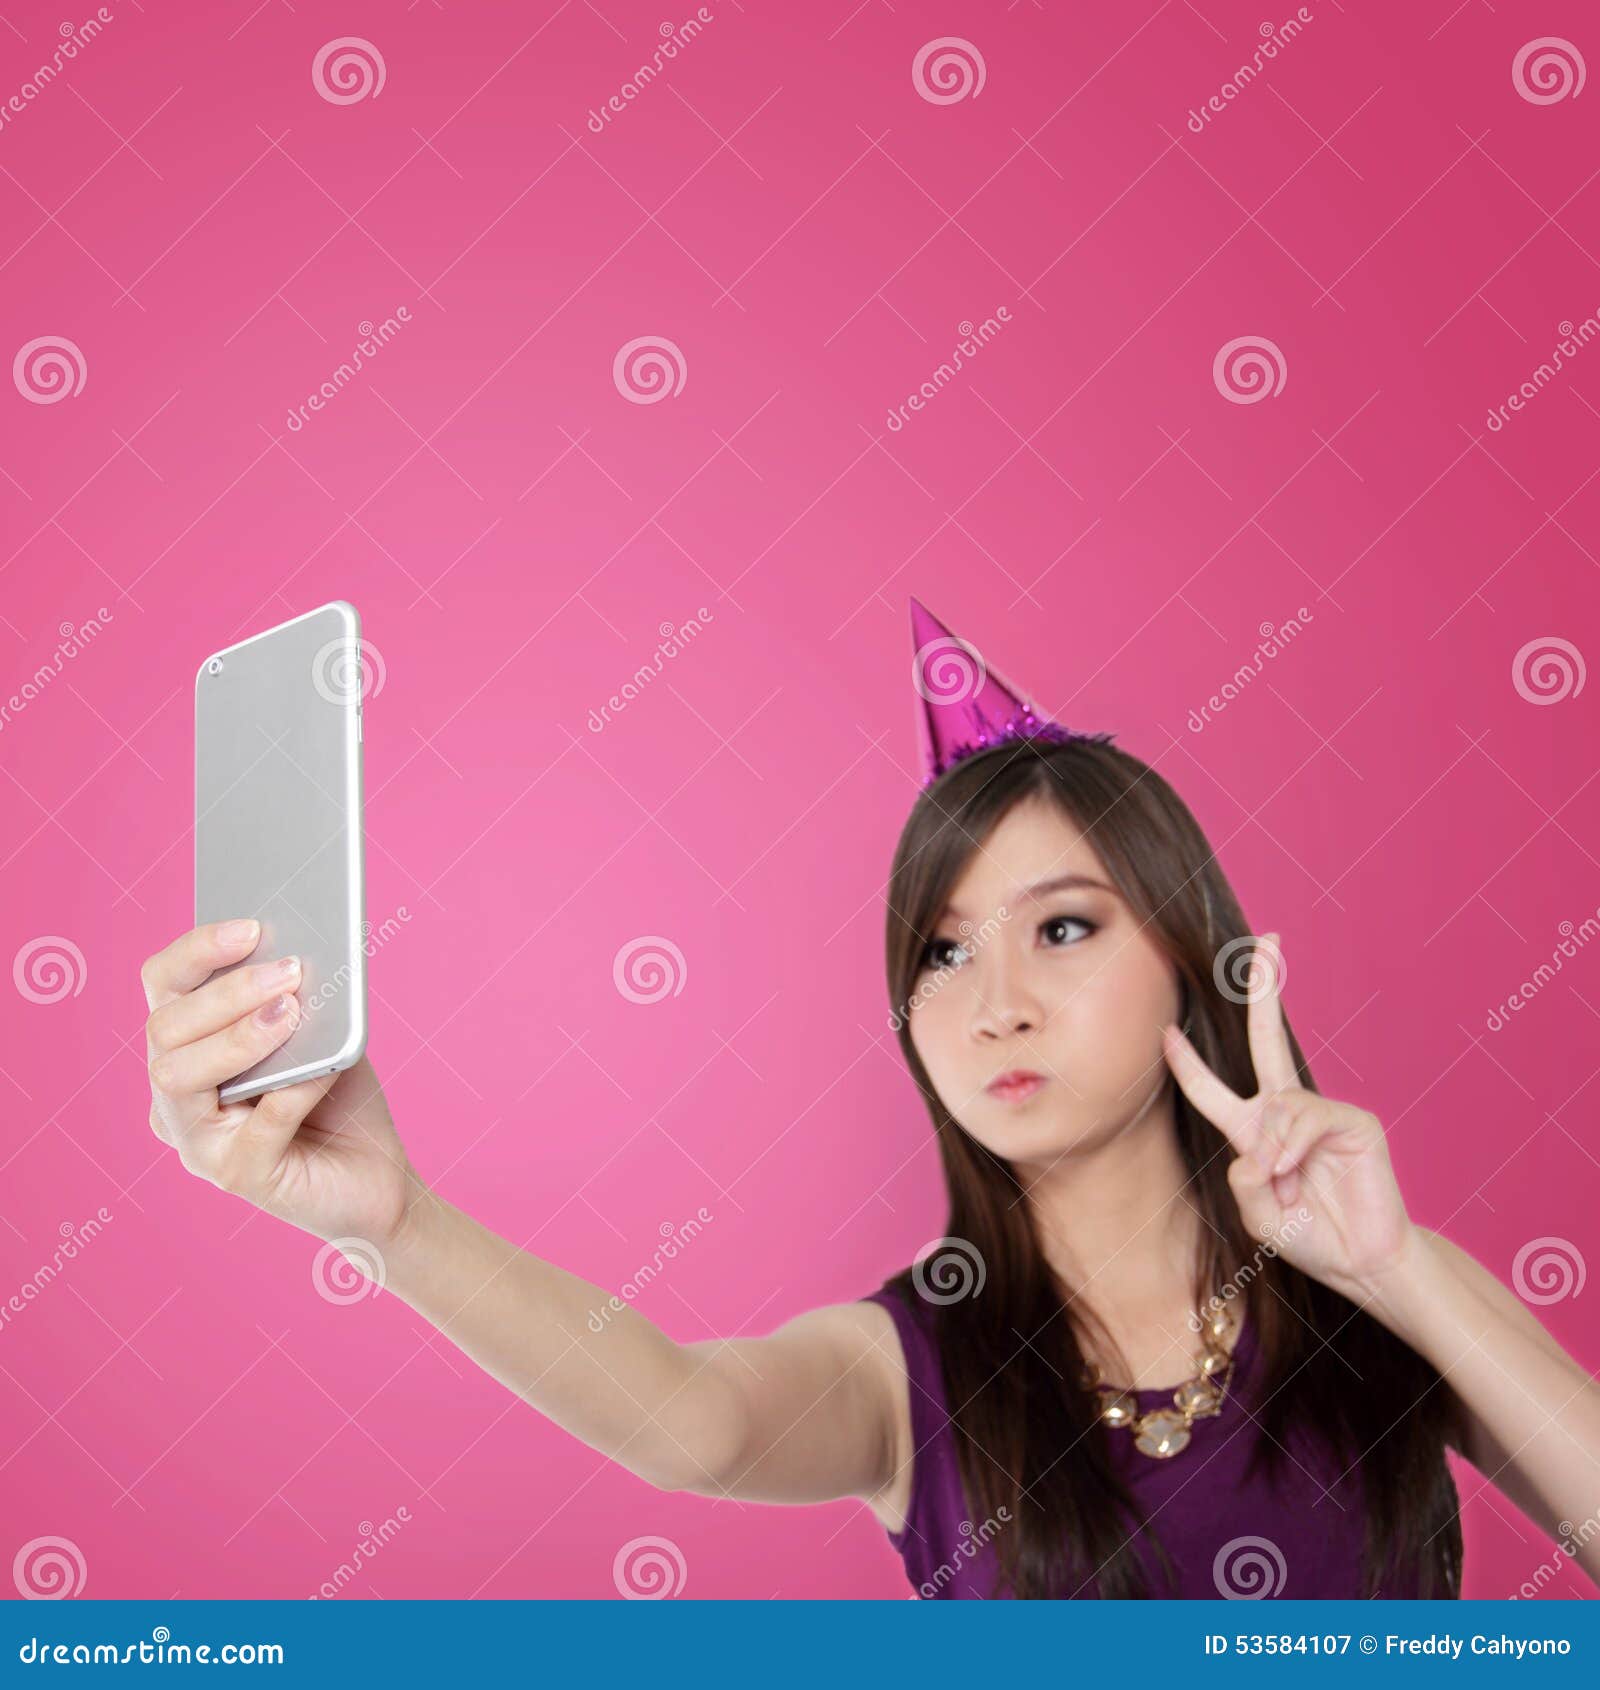 Cute Teen Girls Selfie Poses